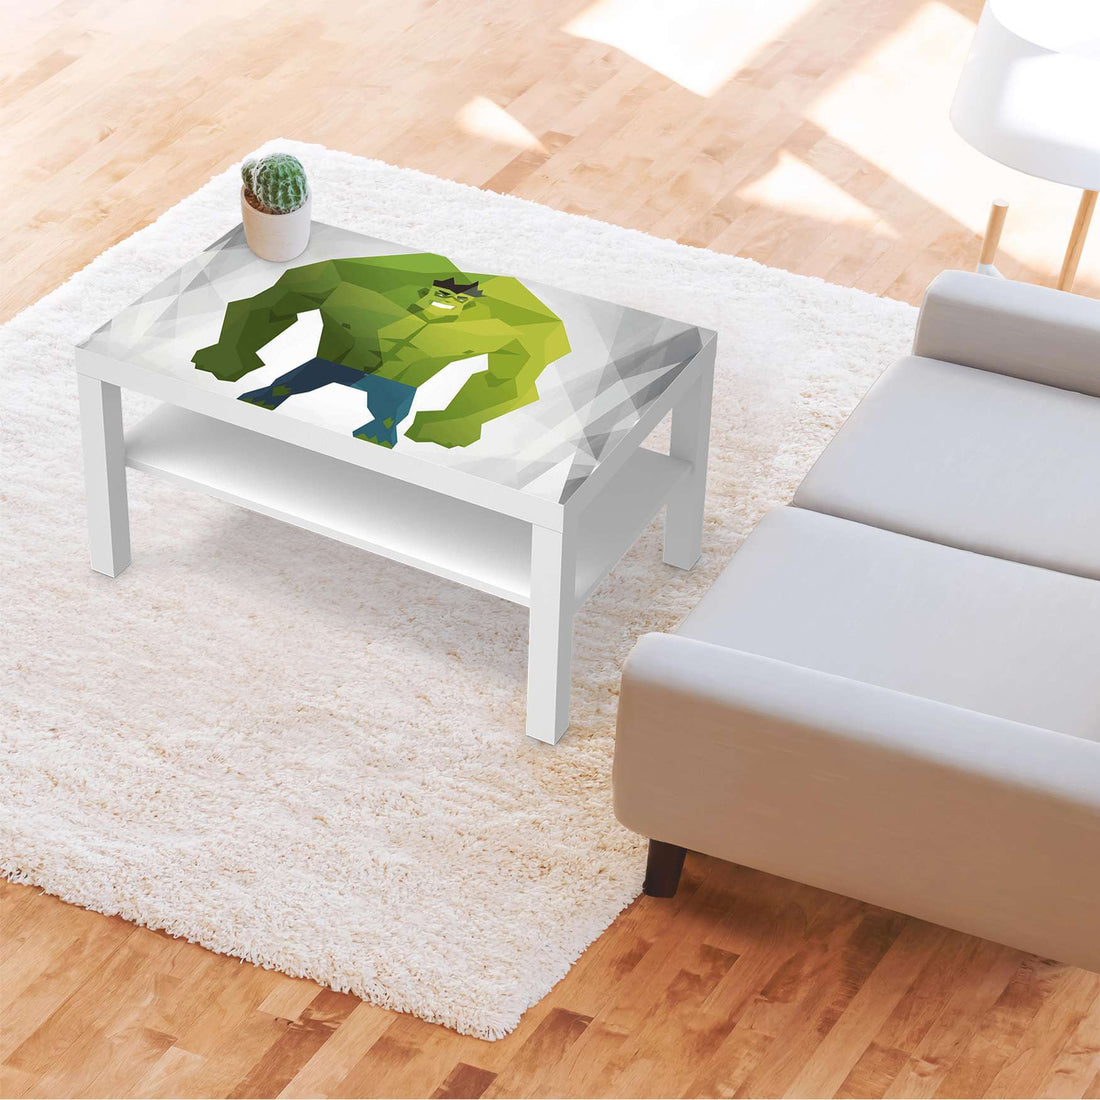 Möbelfolie Mr. Green - IKEA Lack Tisch 90x55 cm - Kinderzimmer